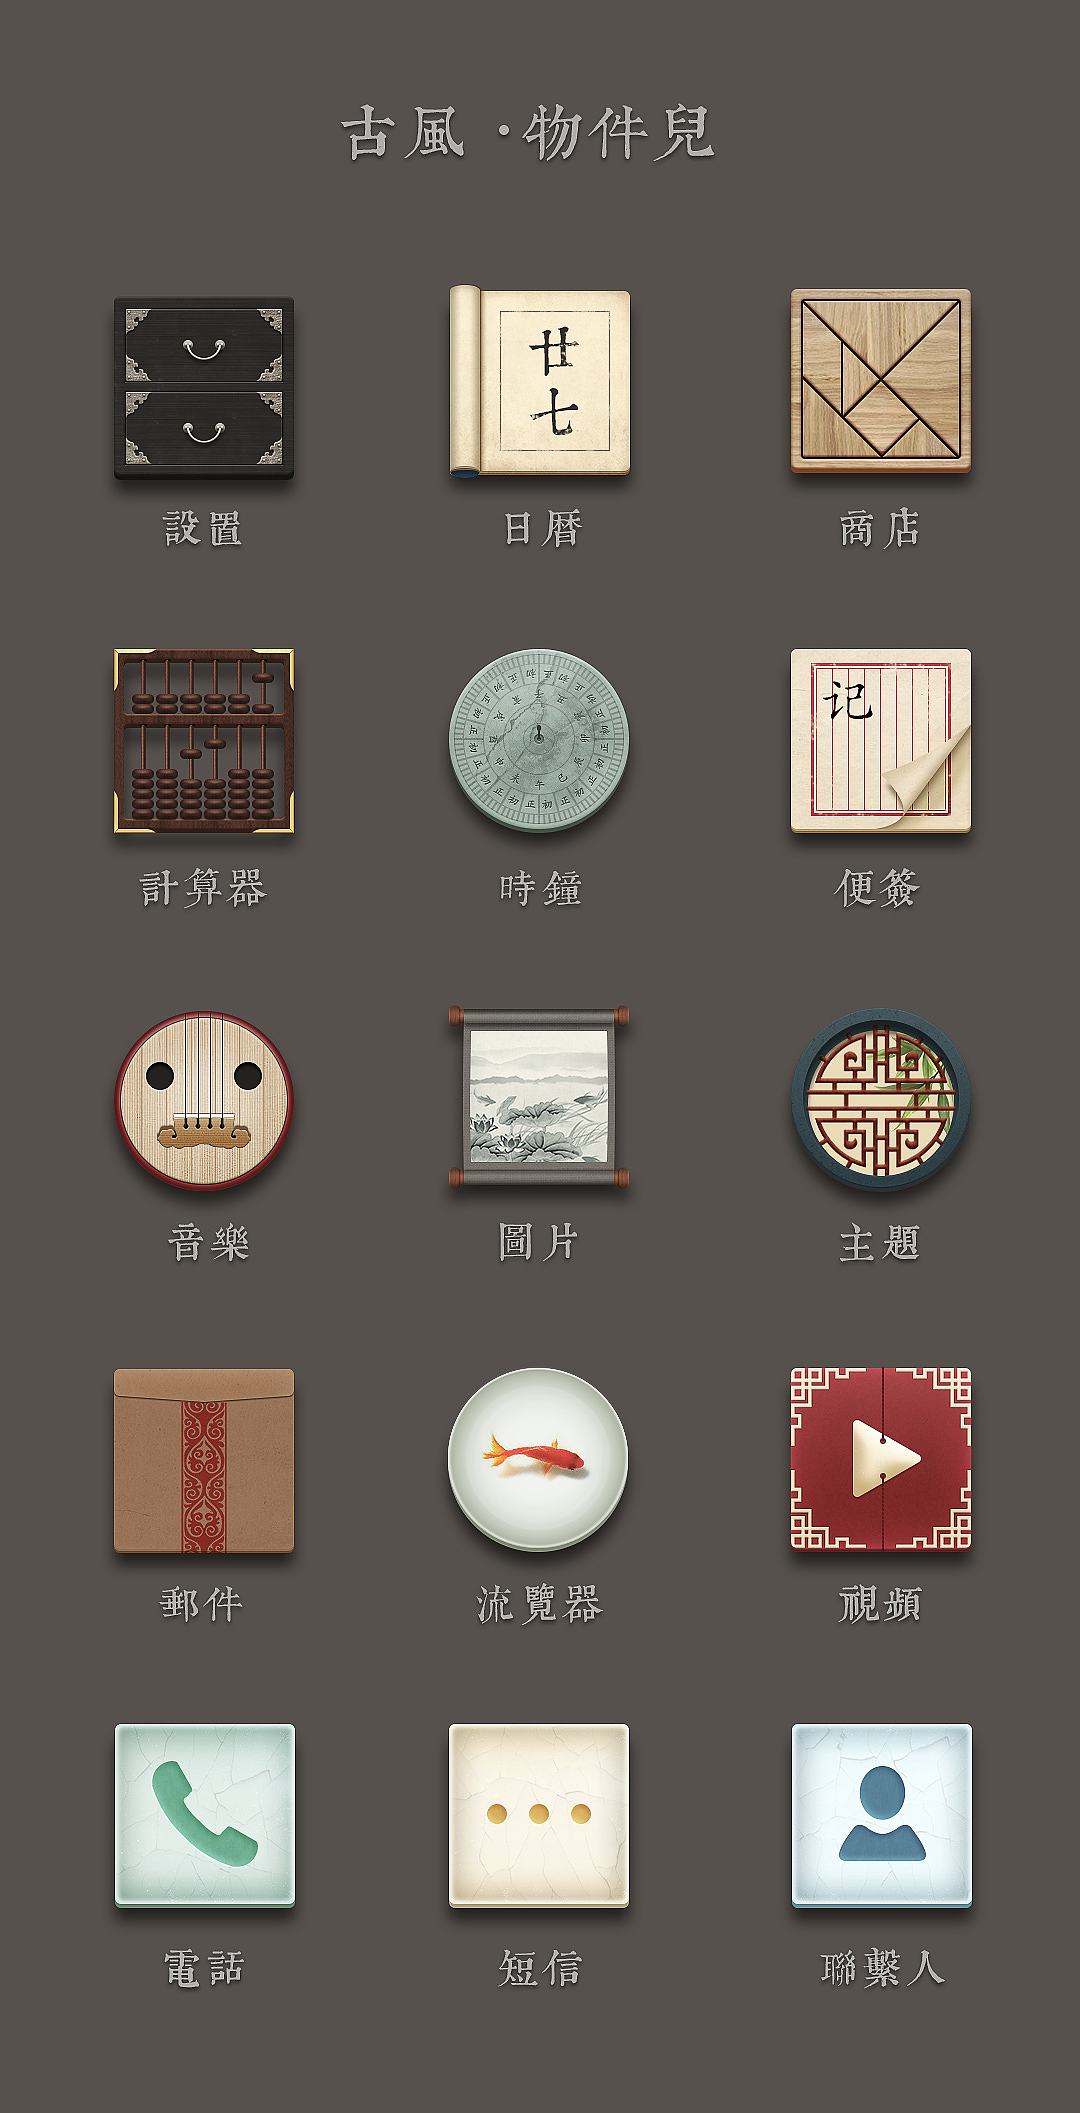 中国古风的拟物化图标,画着玩